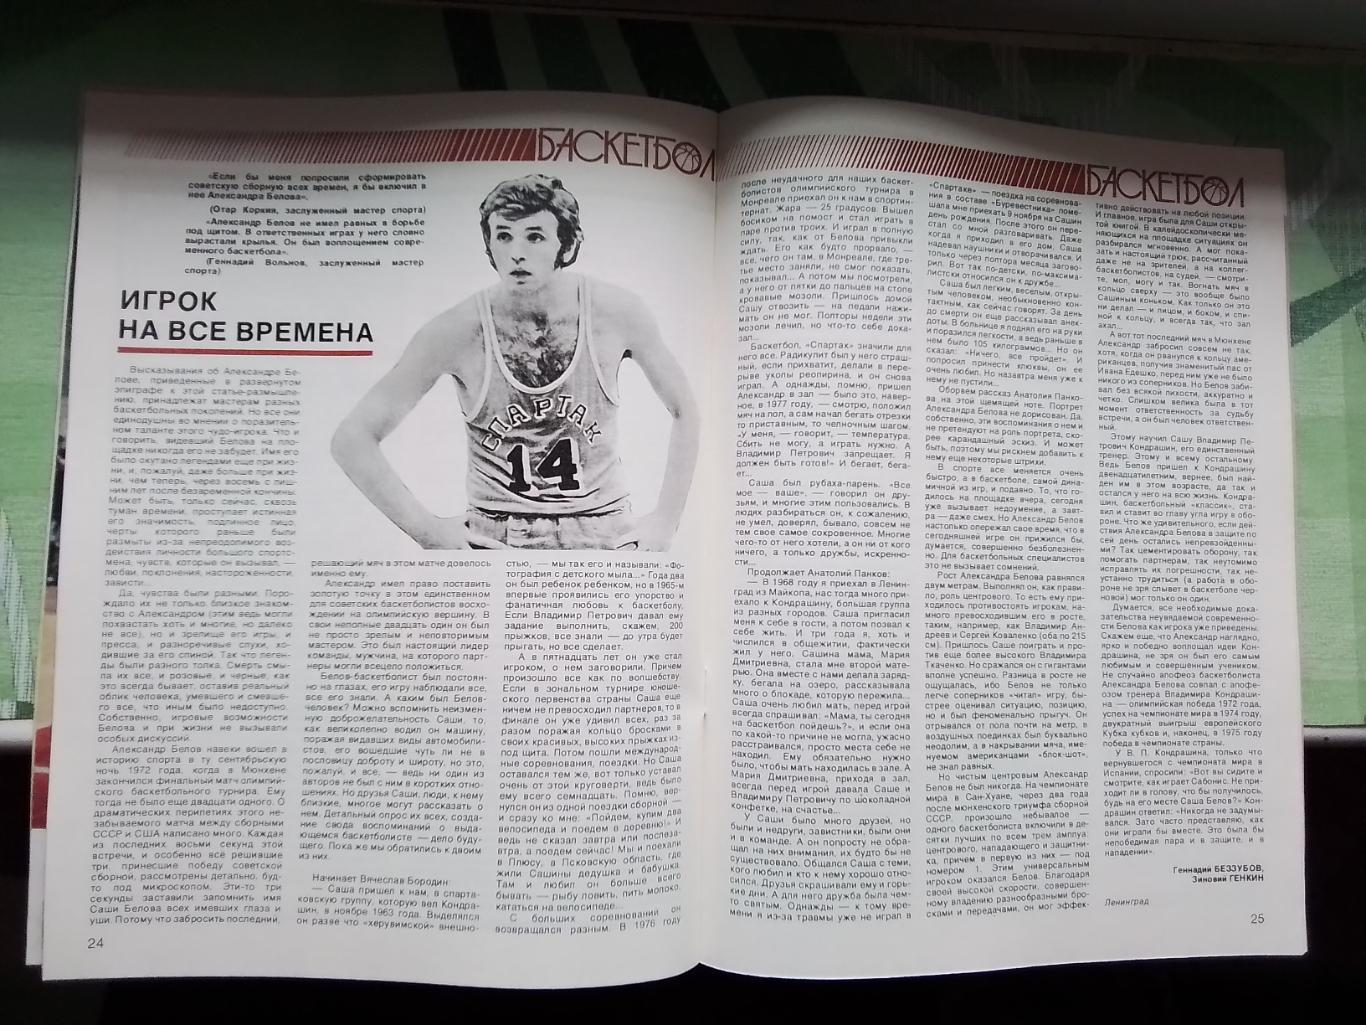 Журнал Спортивные игры 1987 3 Каунас обладатель межконт Кубка М Якушин ДМ - НБА 4